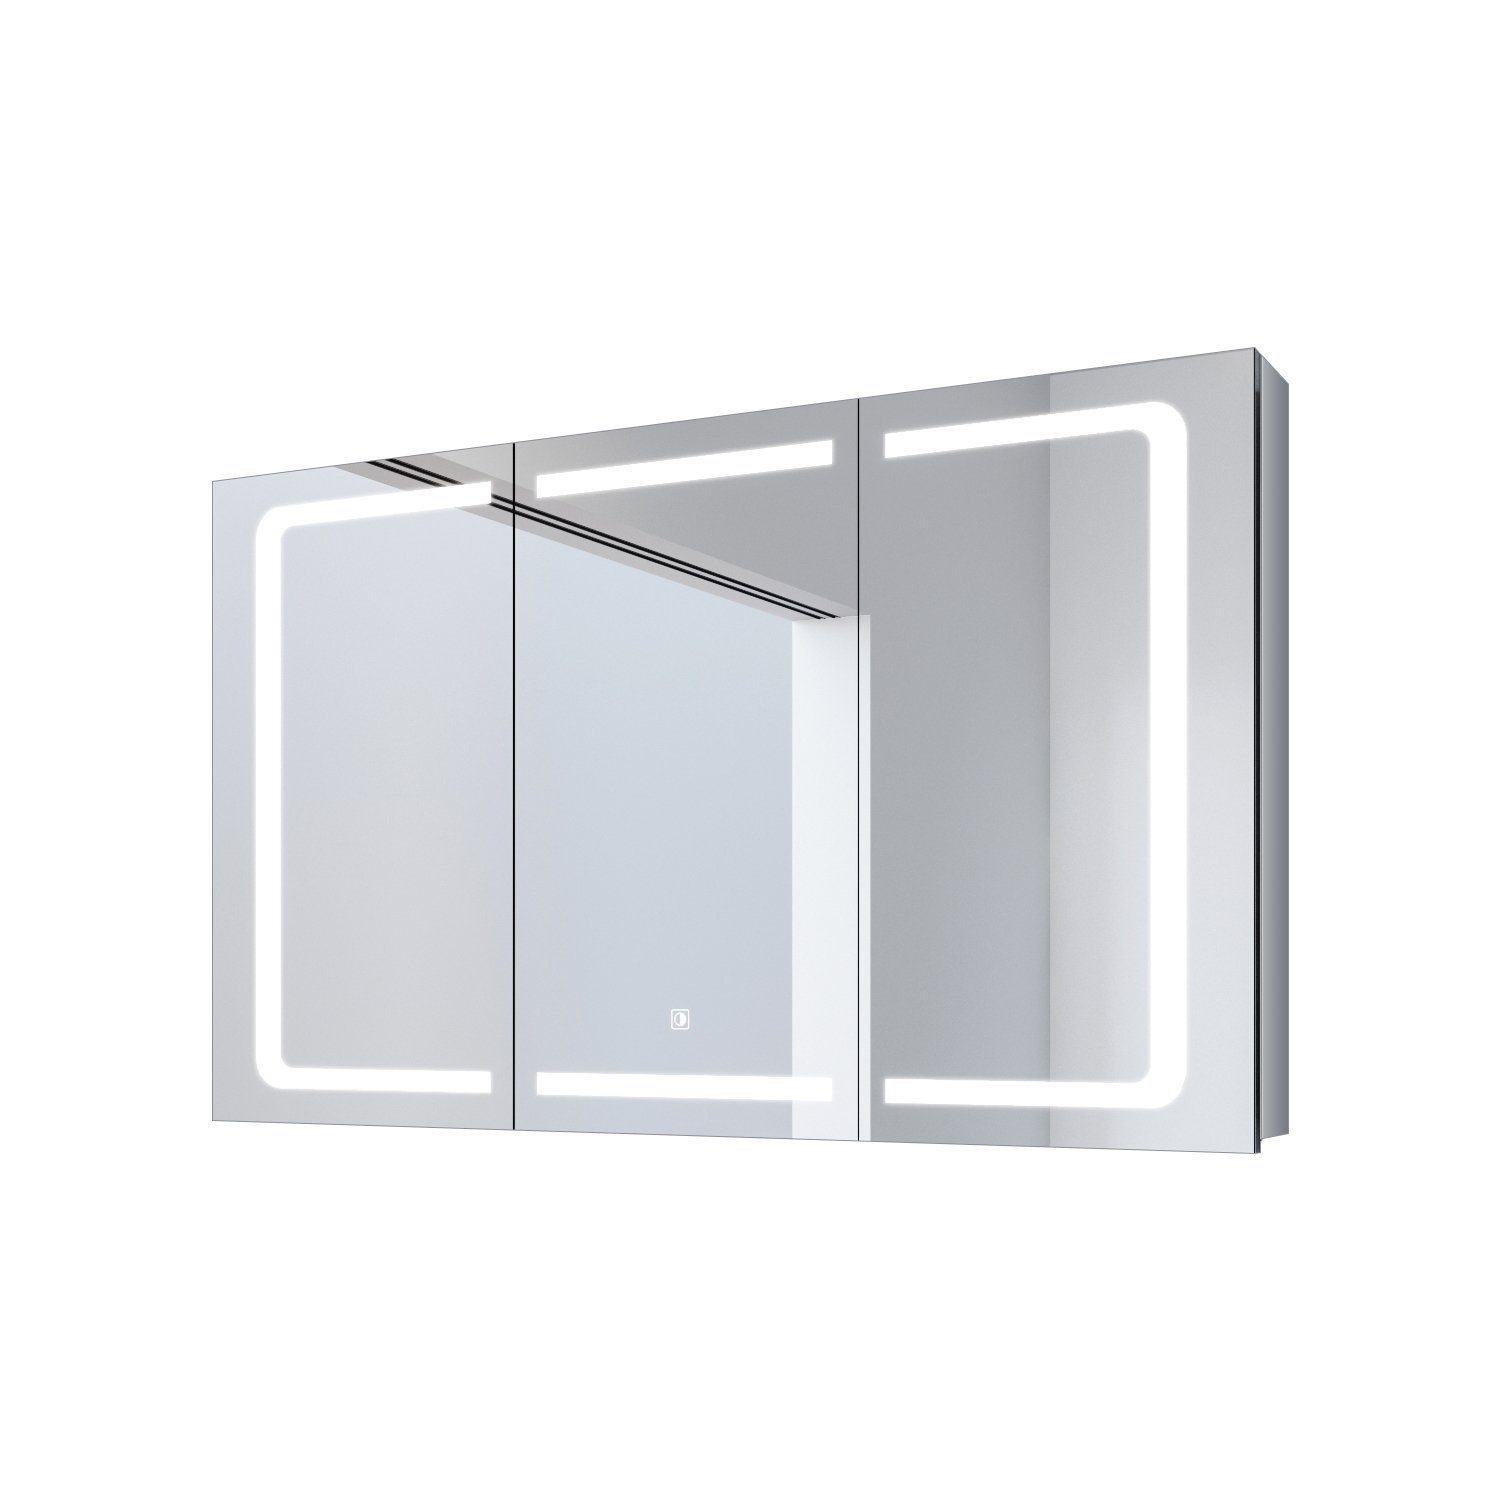 Badezimmerspiegelschrank Spiegelschrank cm Beleuchtung Steckdose Badschrank mit Spiegelschrank 105 SONNI Badspiegel, LED Edelstah, Bad